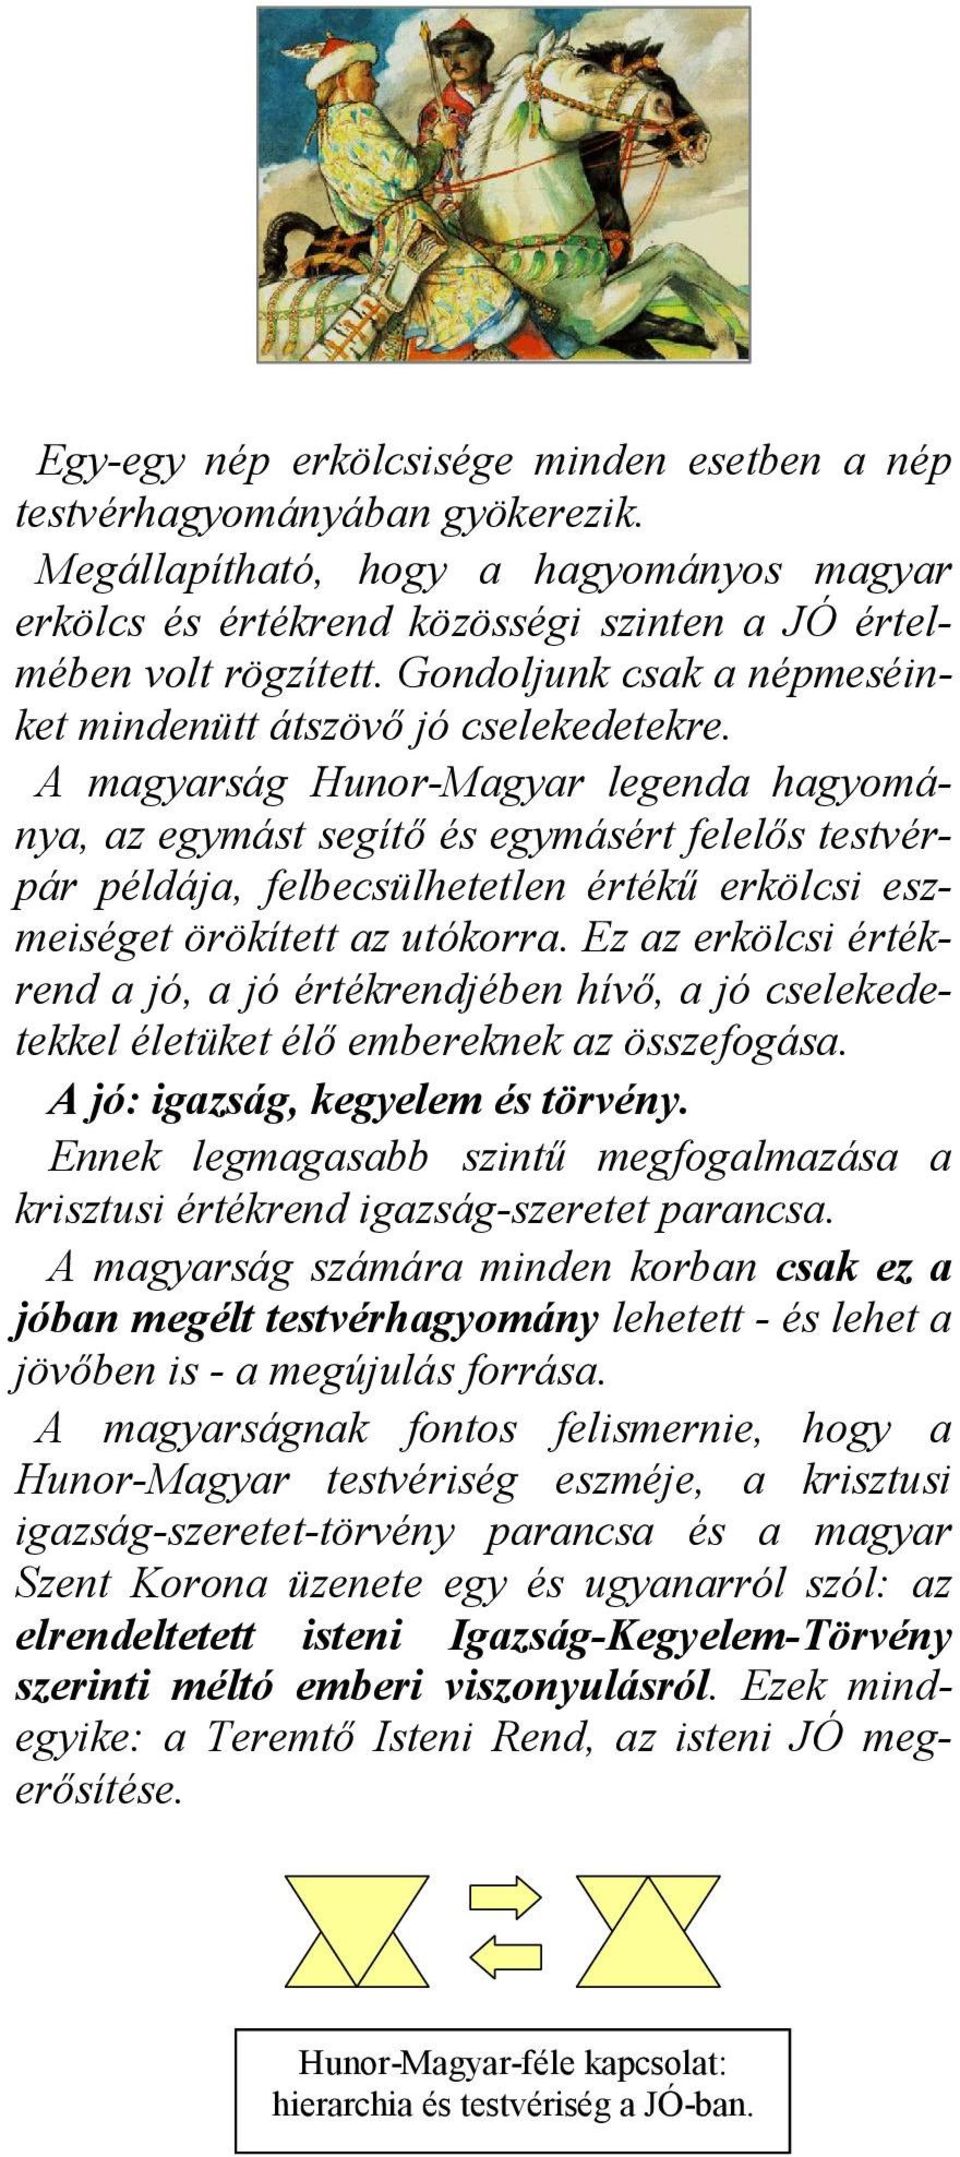 A magyarság Hunor-Magyar legenda hagyománya, az egymást segítı és egymásért felelıs testvérpár példája, felbecsülhetetlen értékő erkölcsi eszmeiséget örökített az utókorra.